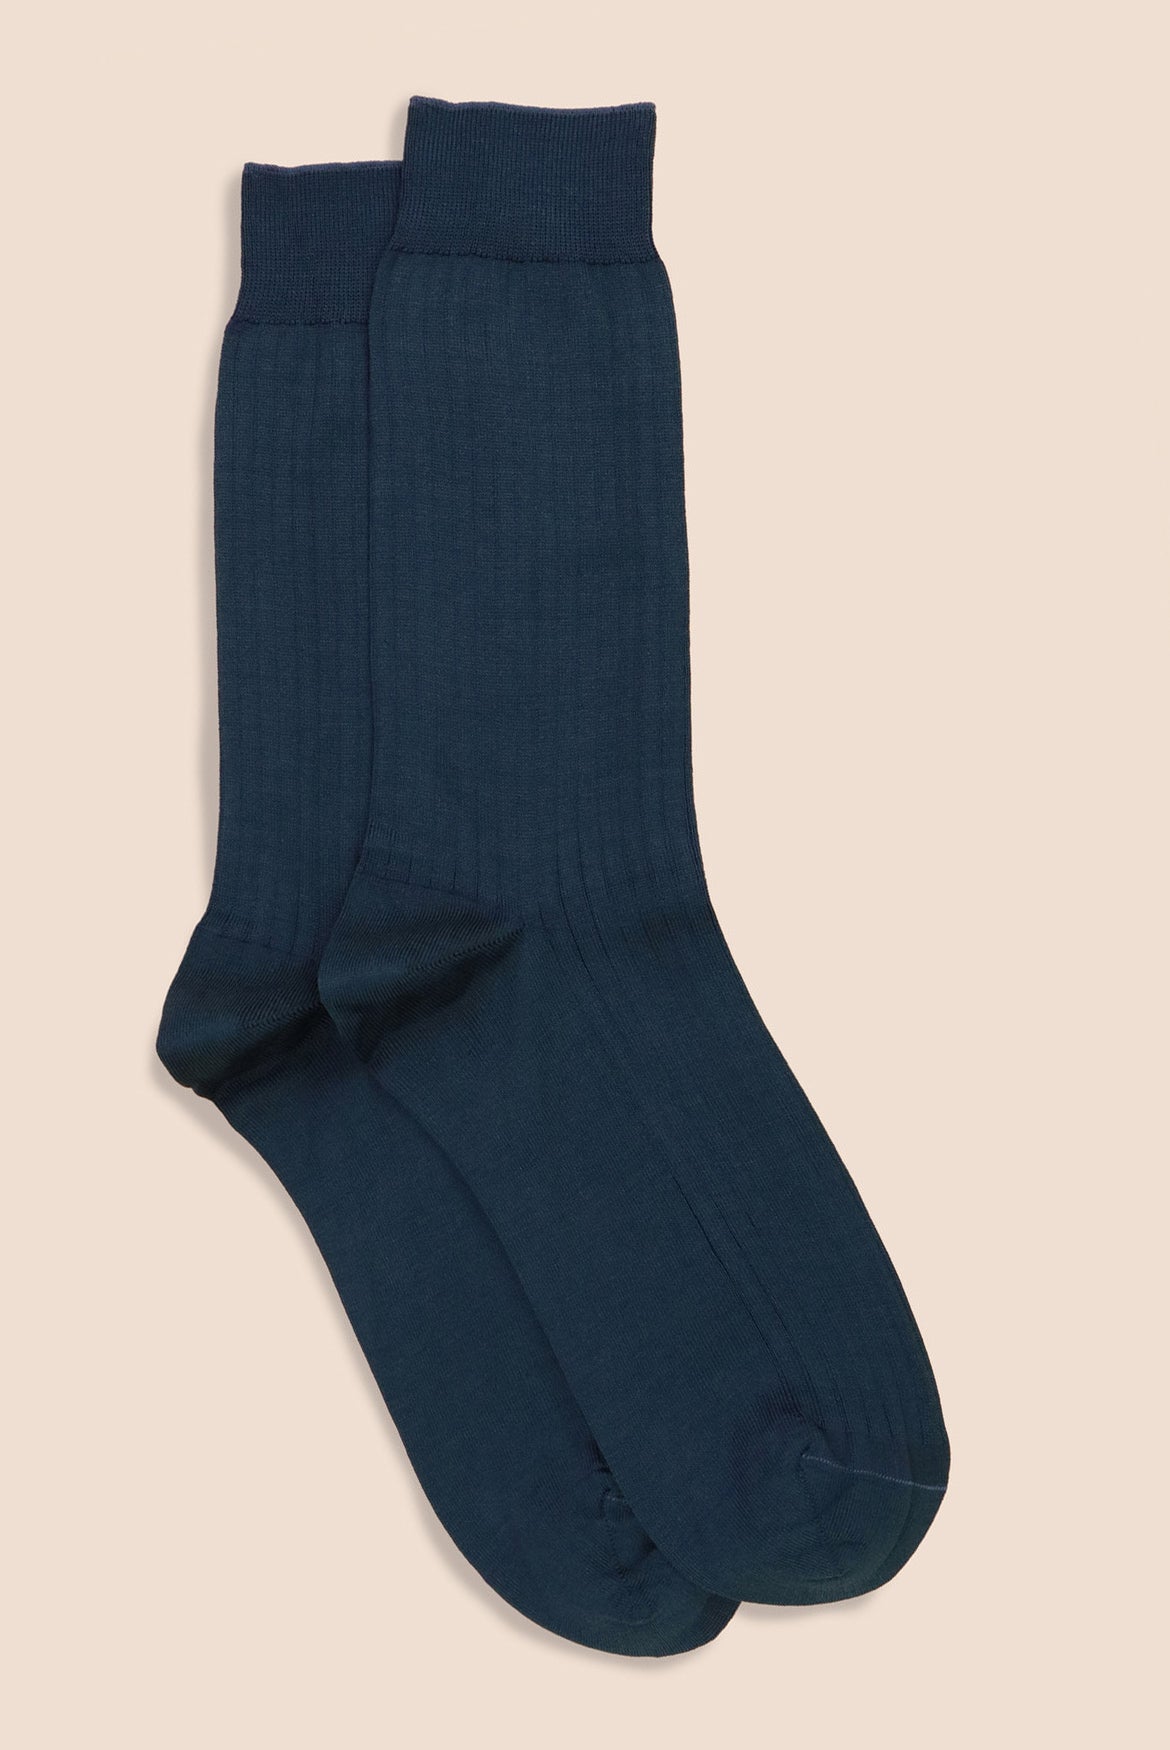 Chaussettes hautes côtelées bleu foncé en coton doux pour enfants